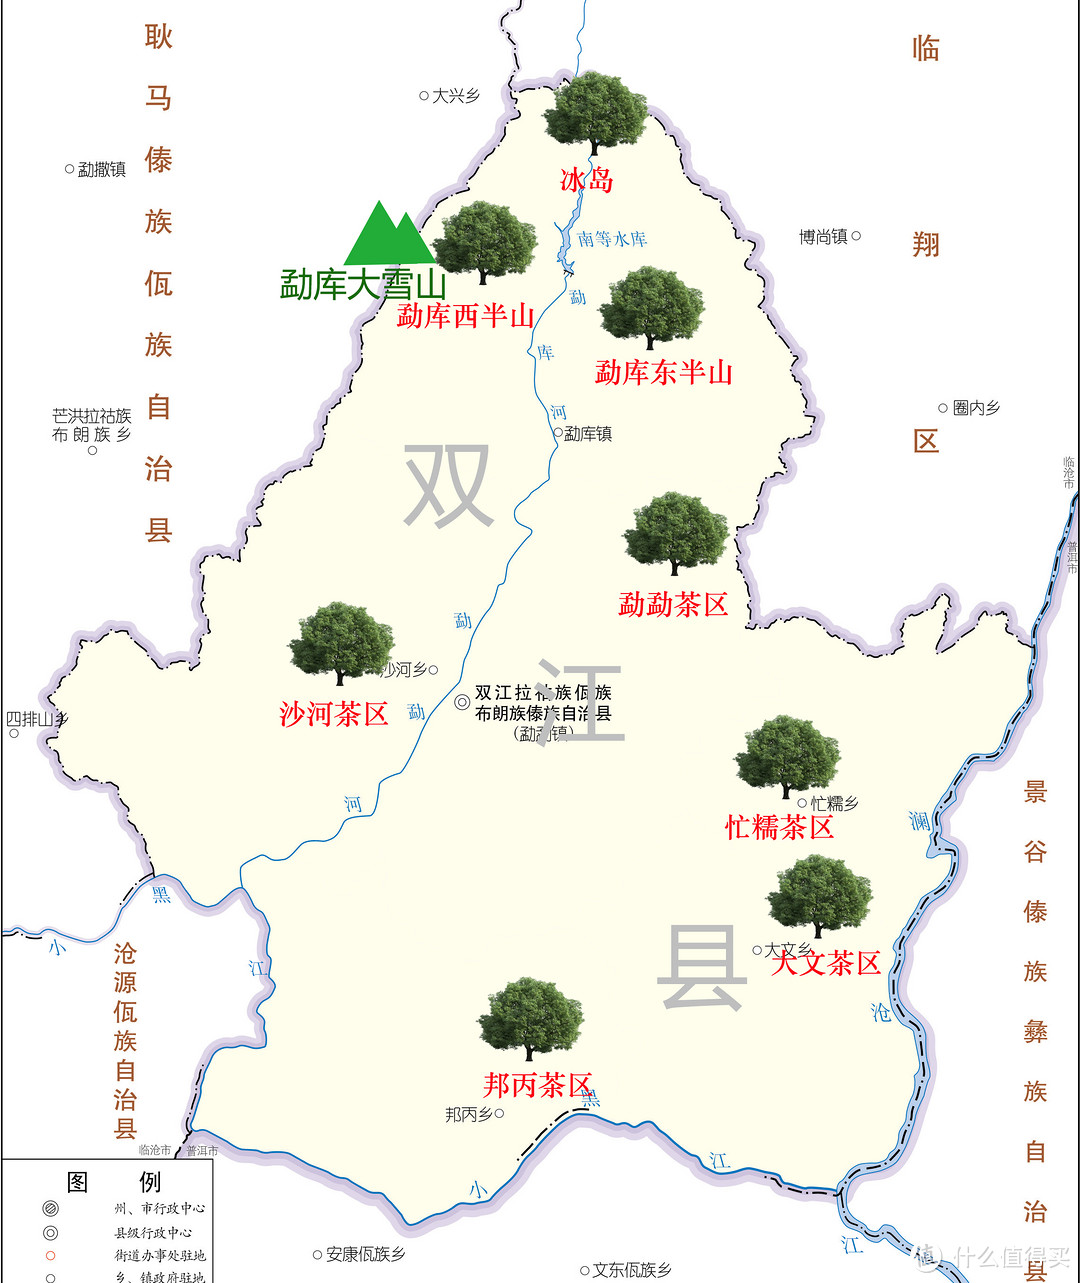 双江县主要产茶区分布示意图（手工标注，仅供参考）